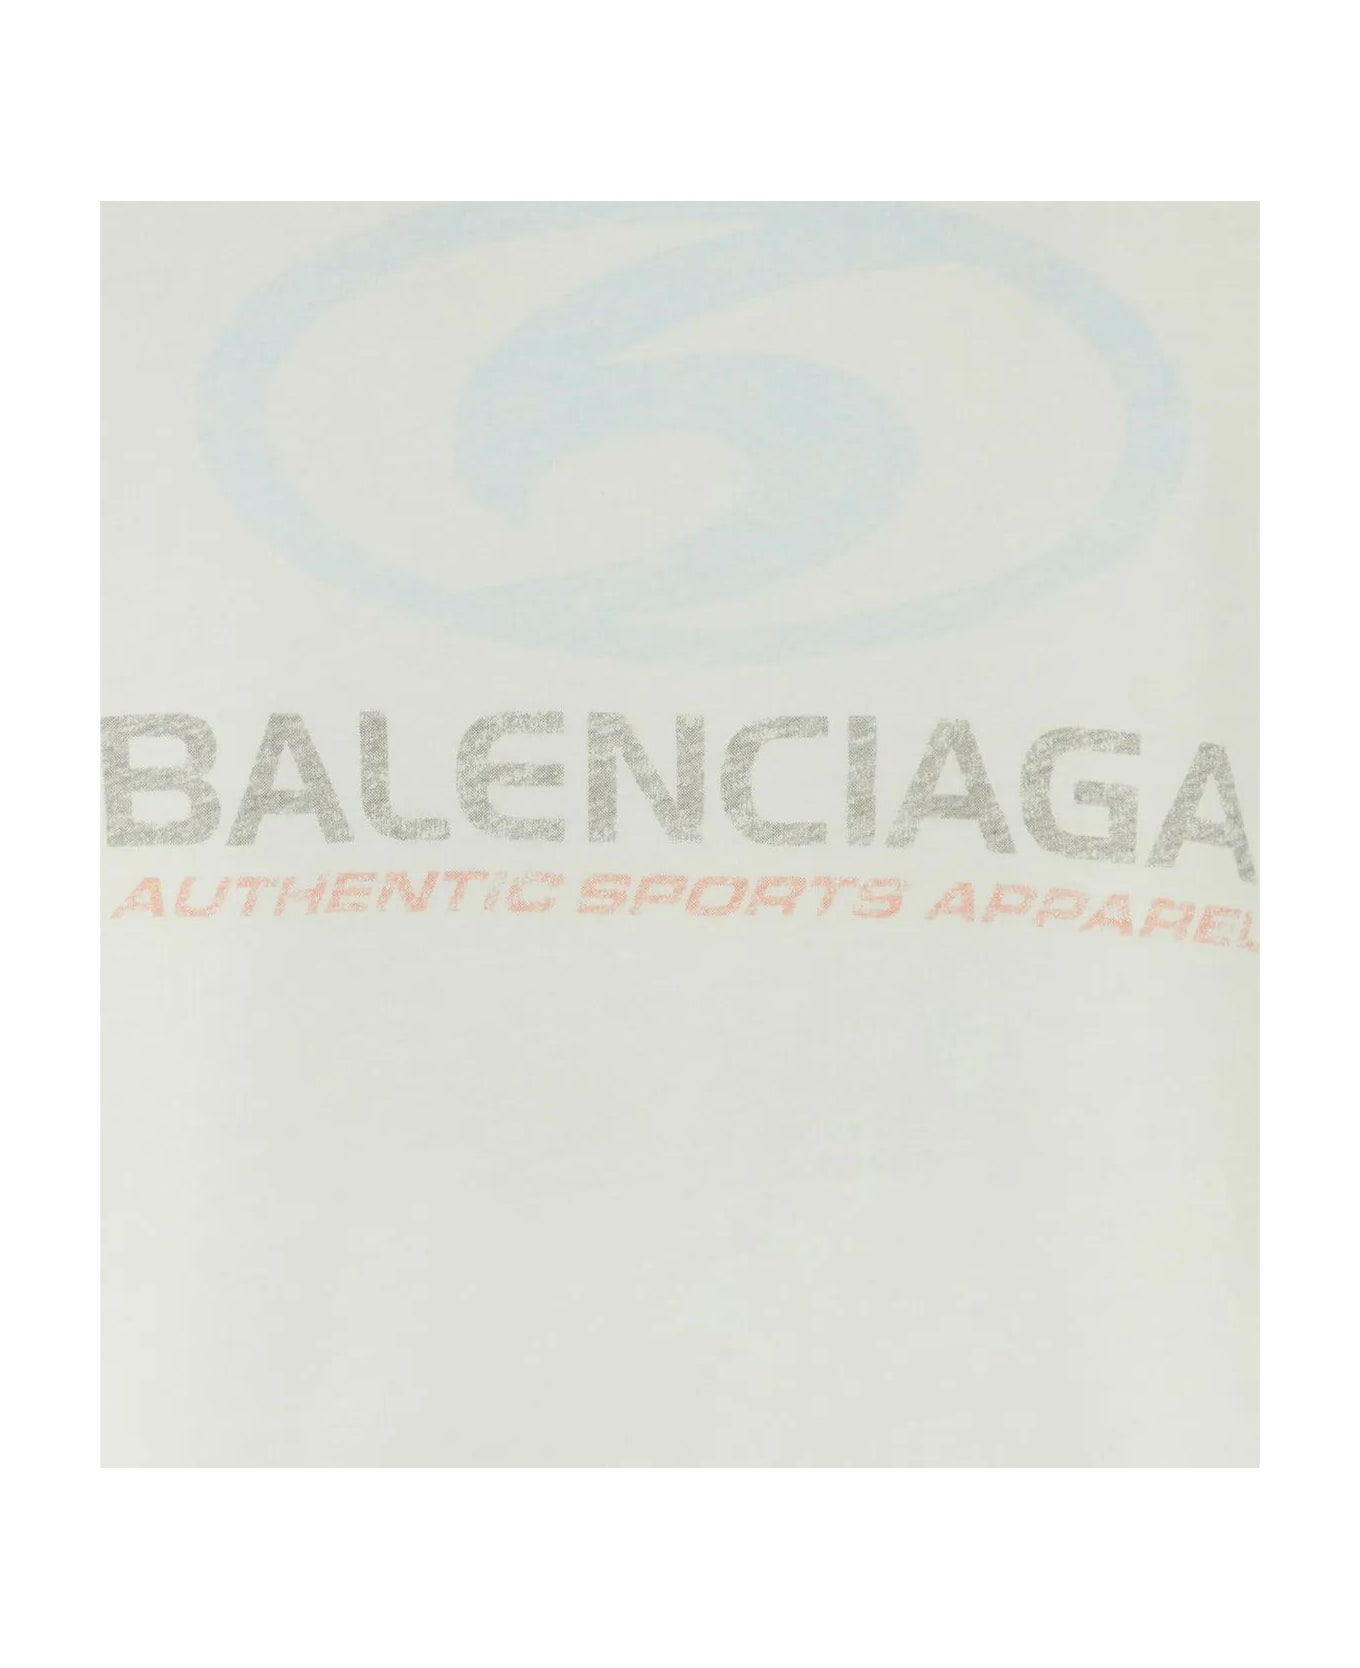 Balenciaga Surfer T-shirt - White